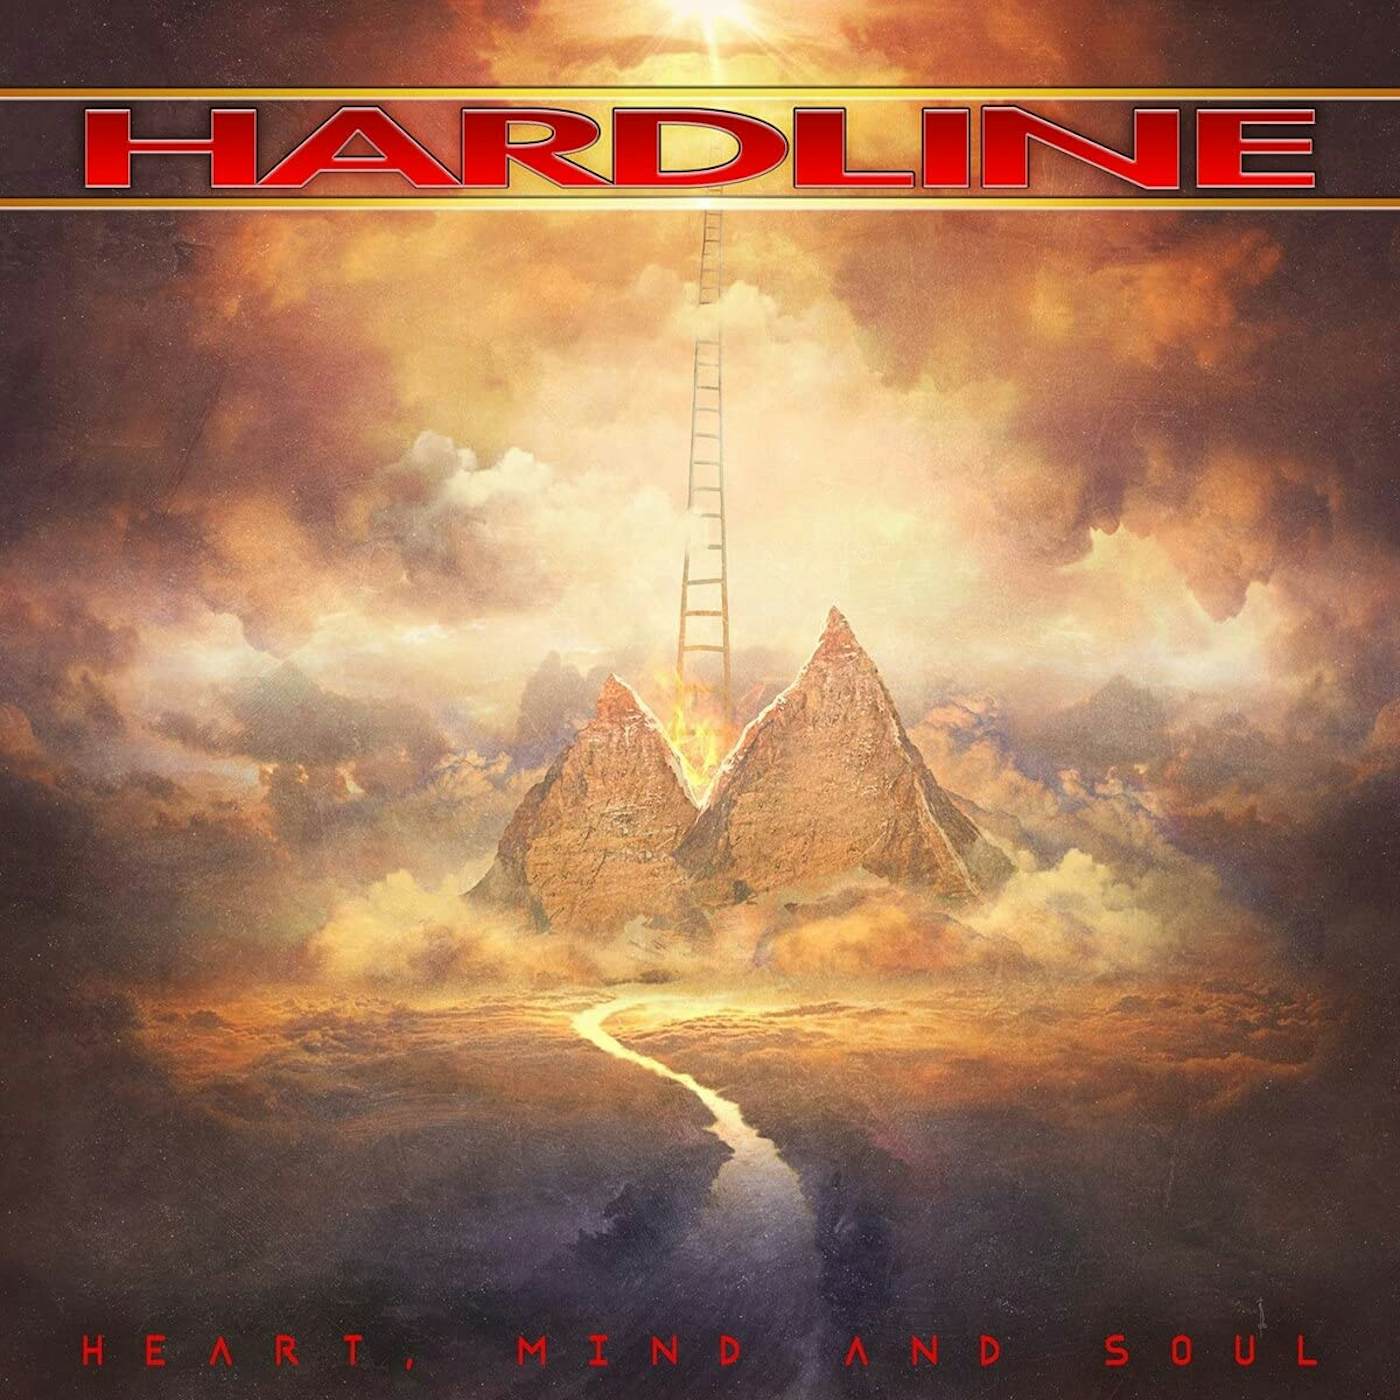 Hardline Heart  Mind And Soul CD